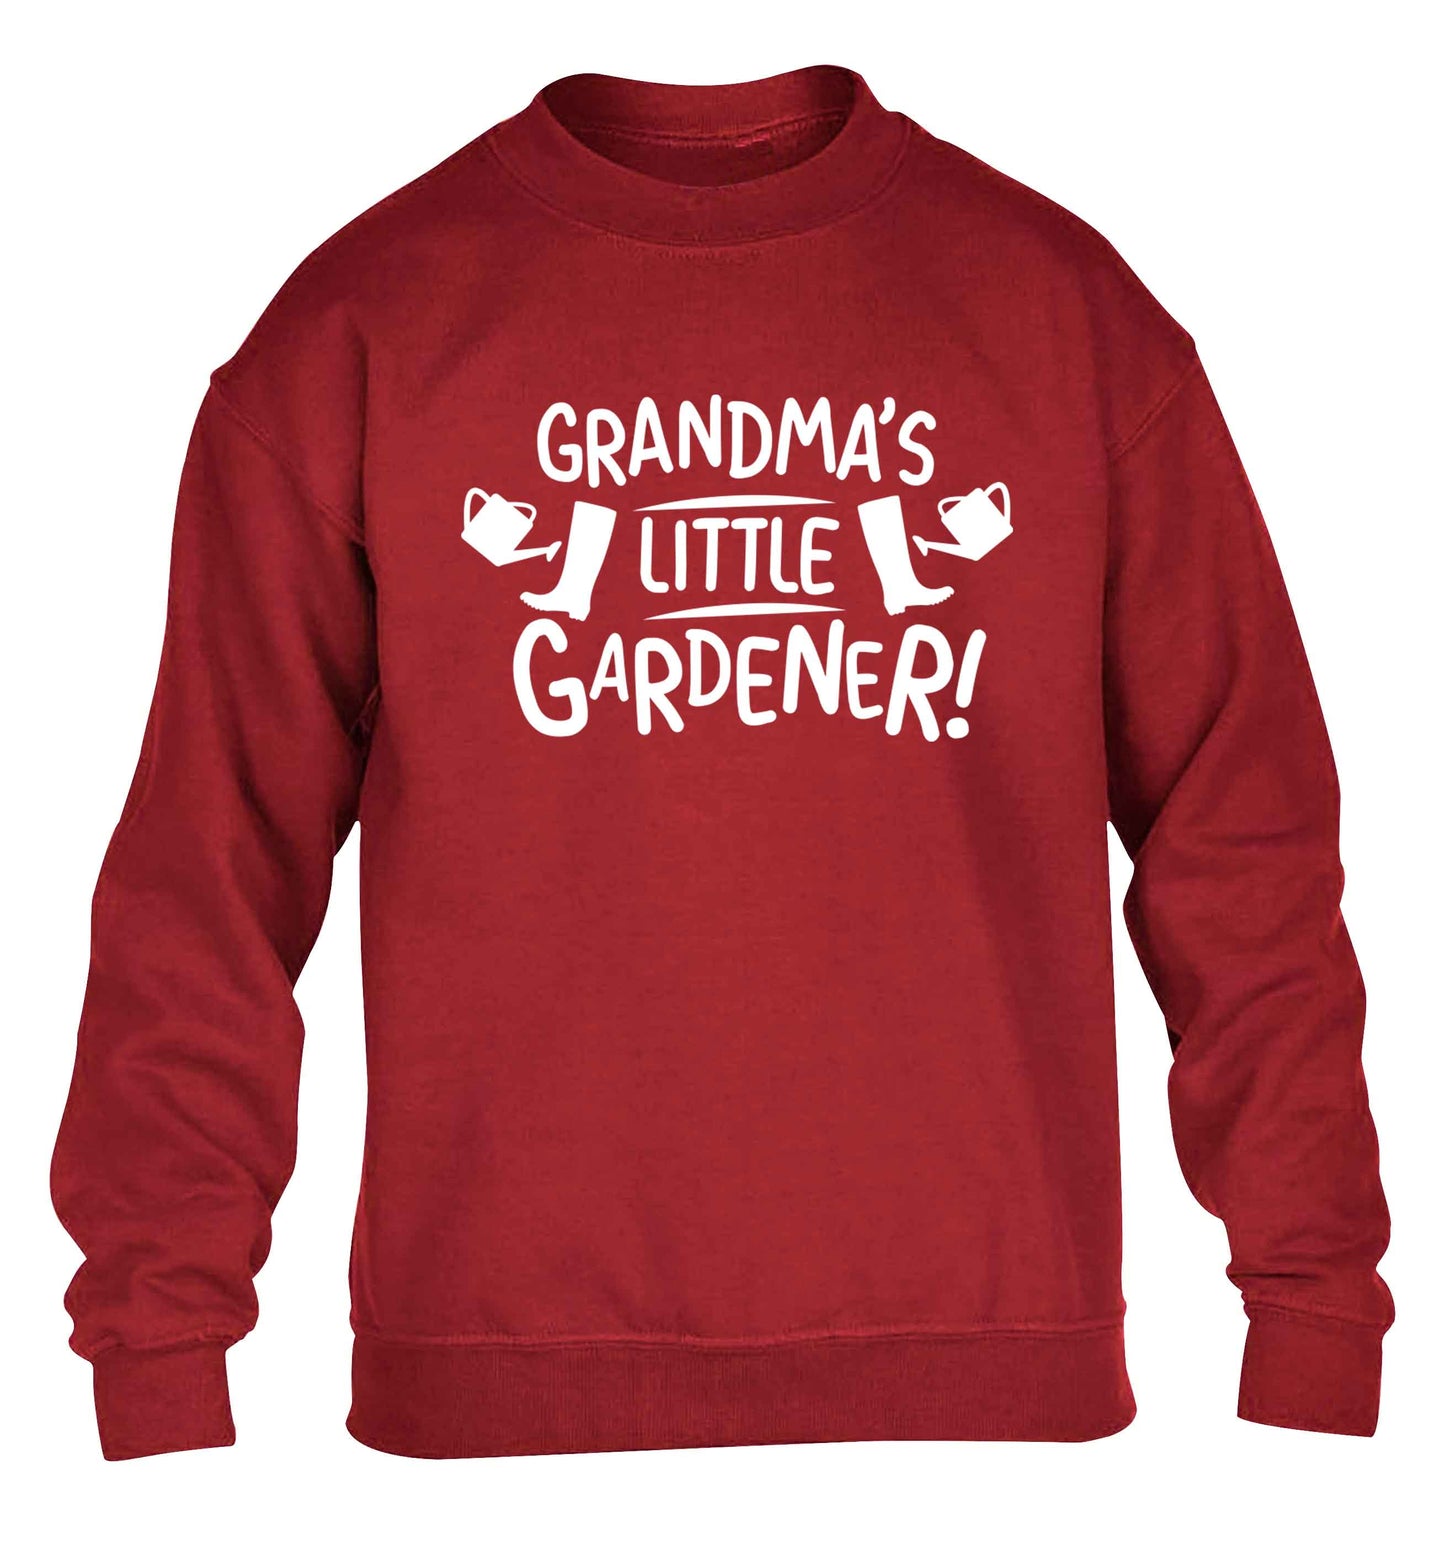 Grandma's little gardener children's grey sweater 12-13 Years